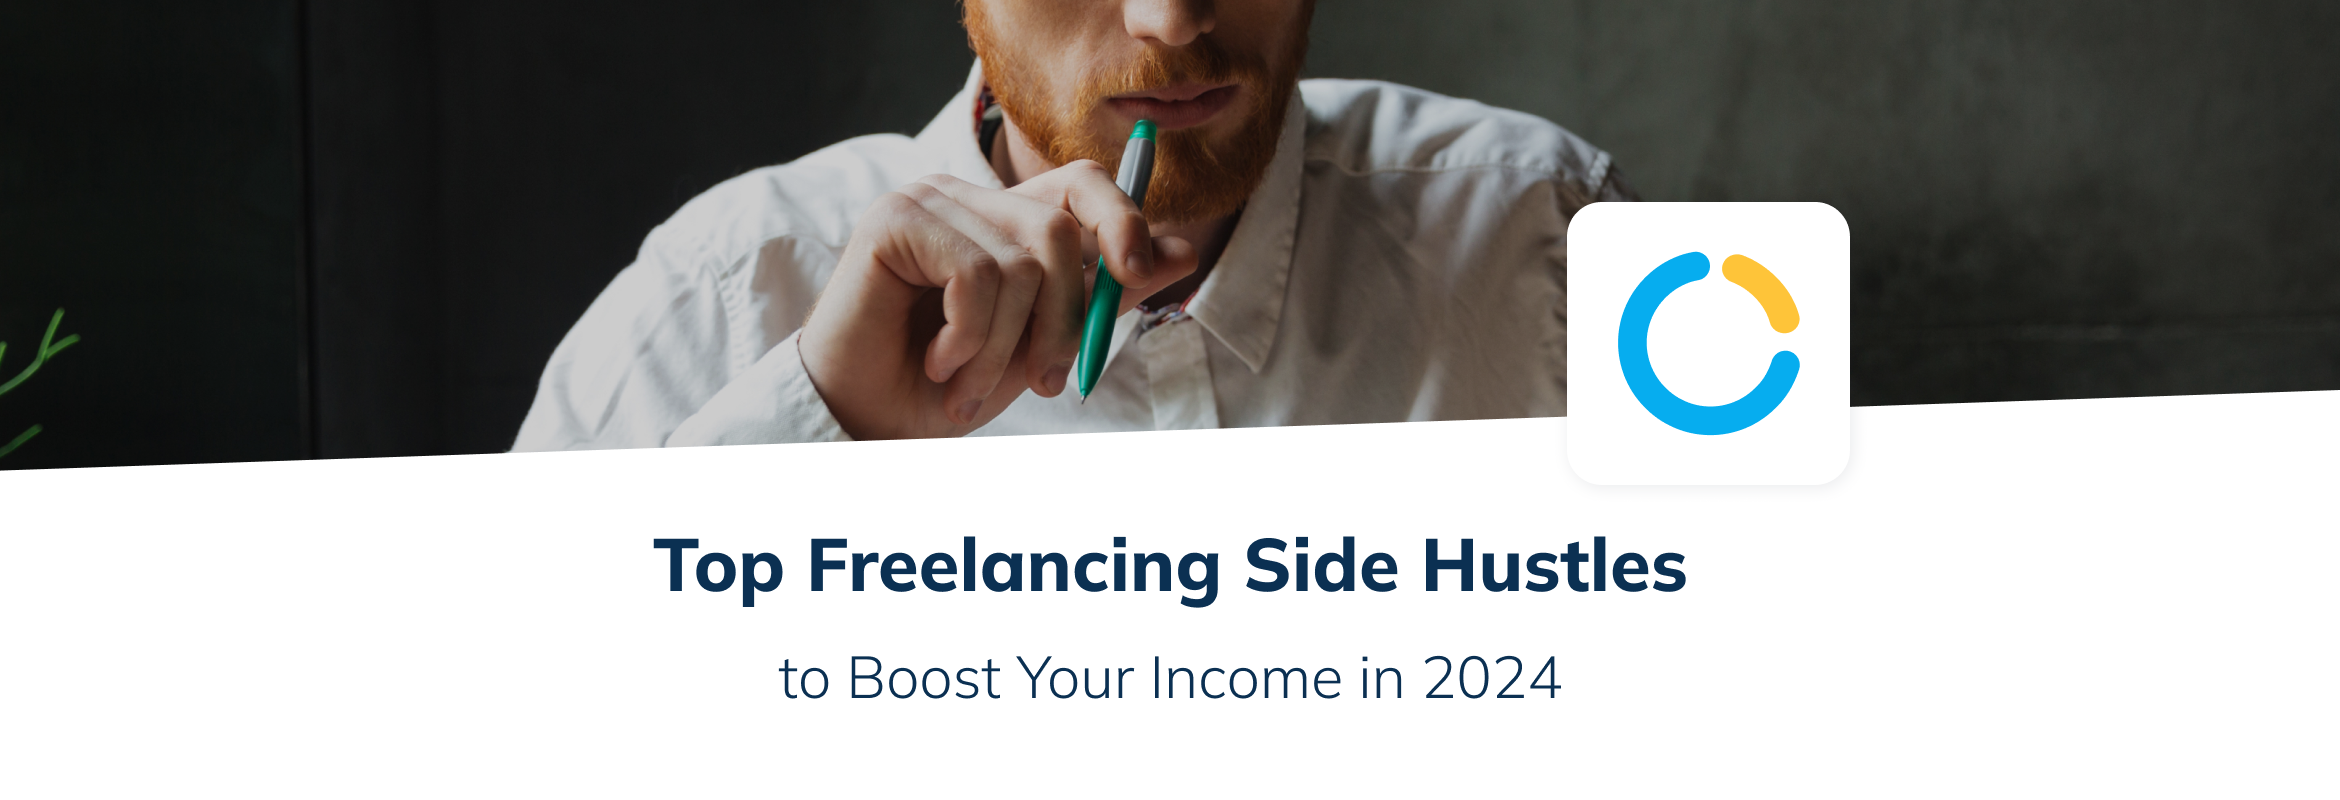 Top Freelancing Side hustles